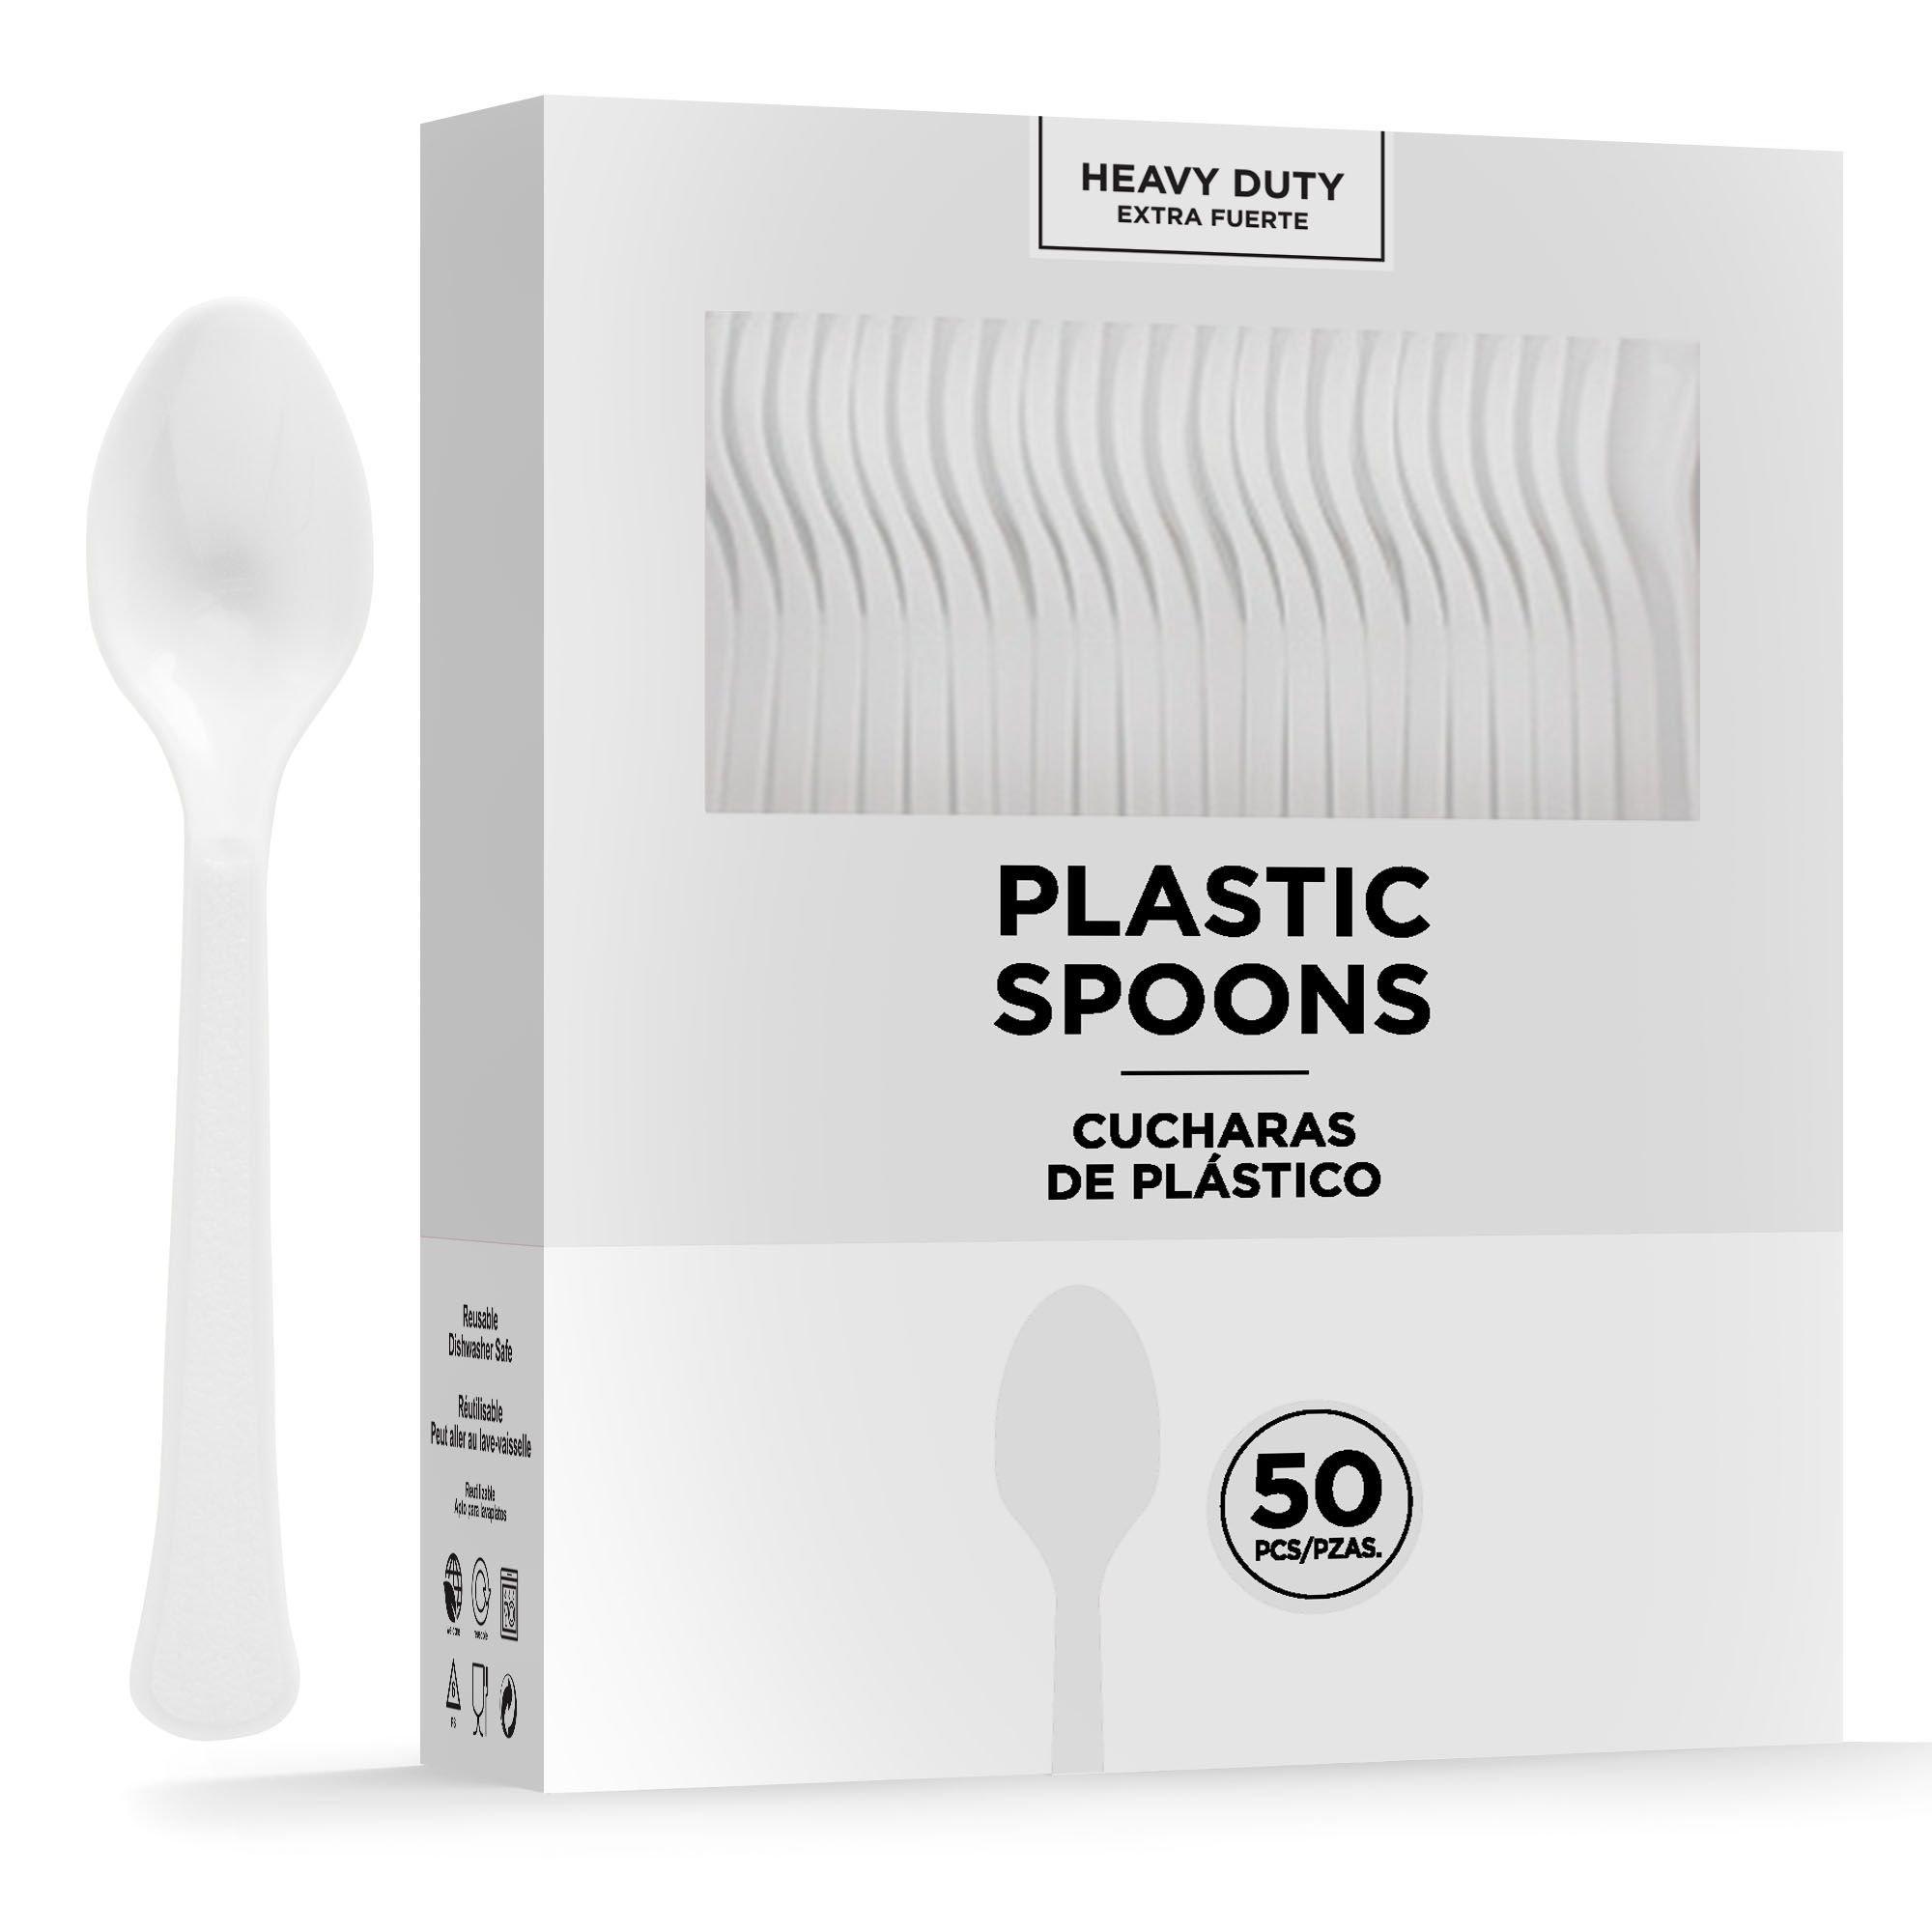 Large transparent plastic spoons, 50 pieces